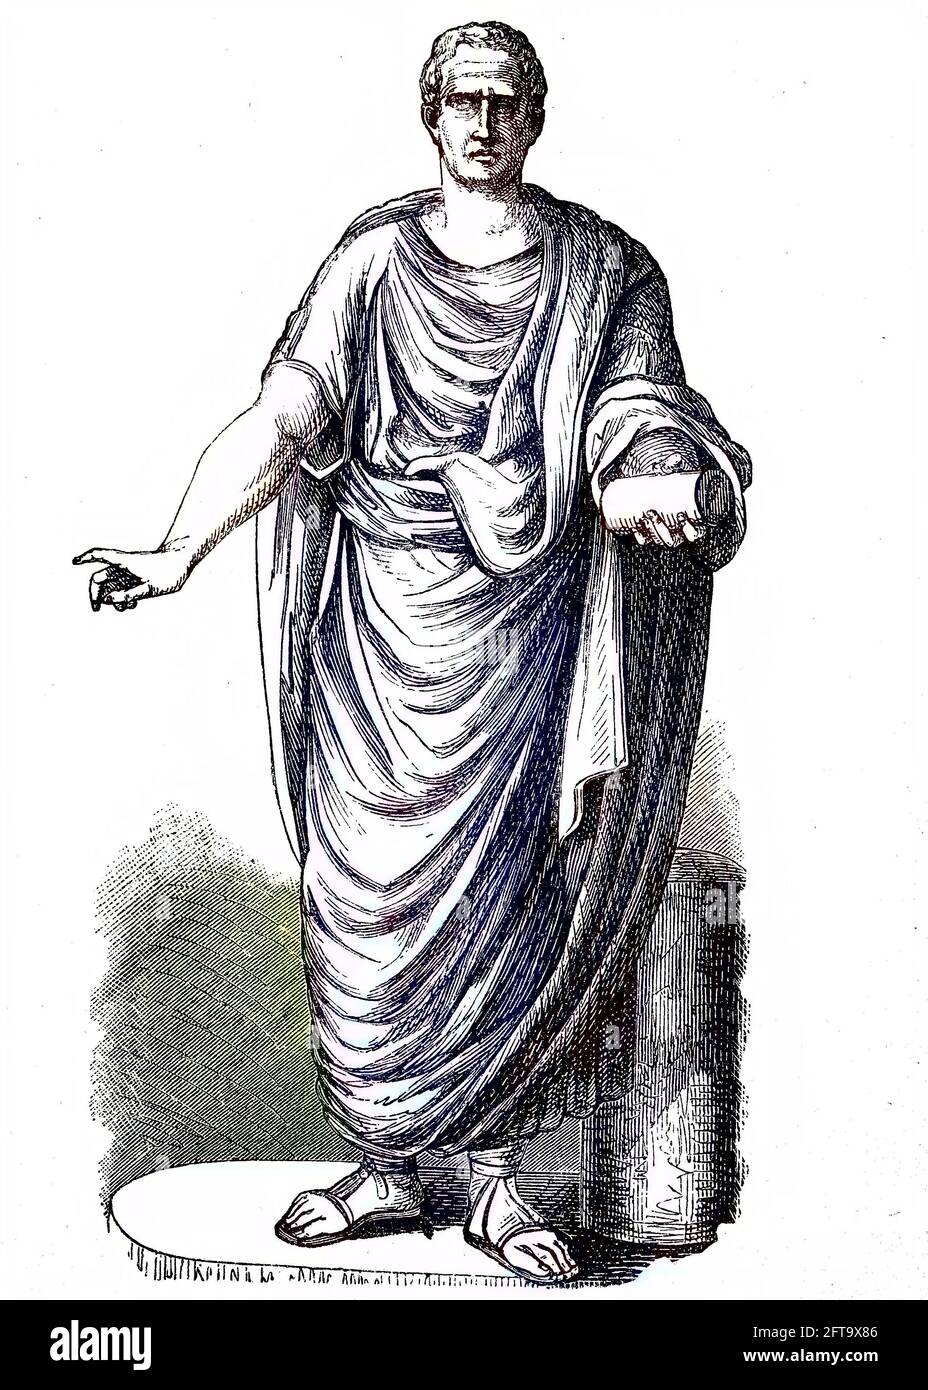 Statue von Marcus Tullius Cicero, 3. Januar 106 v. Chr. - 7. Dezember 43 v. Chr., war ein römischer Politiker, Anwalt, Schriftsteller und Philosoph, der berühmteste Redner in Rom und Konsul im Jahr 63 v. Chr. / Standbild des Marcus Tullius Cicero, 3. Januar 106 v. Chr.- 7. Dezember 43 v. Chr., war ein römischer Politiker, Anwalt, Schriftsteller und Philosoph, der beruhmteste Redner Roms und Konsul im Jahr 63 v. Chr., Historisch, historisch, digital verbesserte Reproduktion eines Originals aus dem 19. Jahrhundert / digitale Reproduktion einer Originalvorlage aus dem 19ten Jahrhundert. Jahrhundert, Handkolorierung, koloriert, Originaldatum n Stockfoto